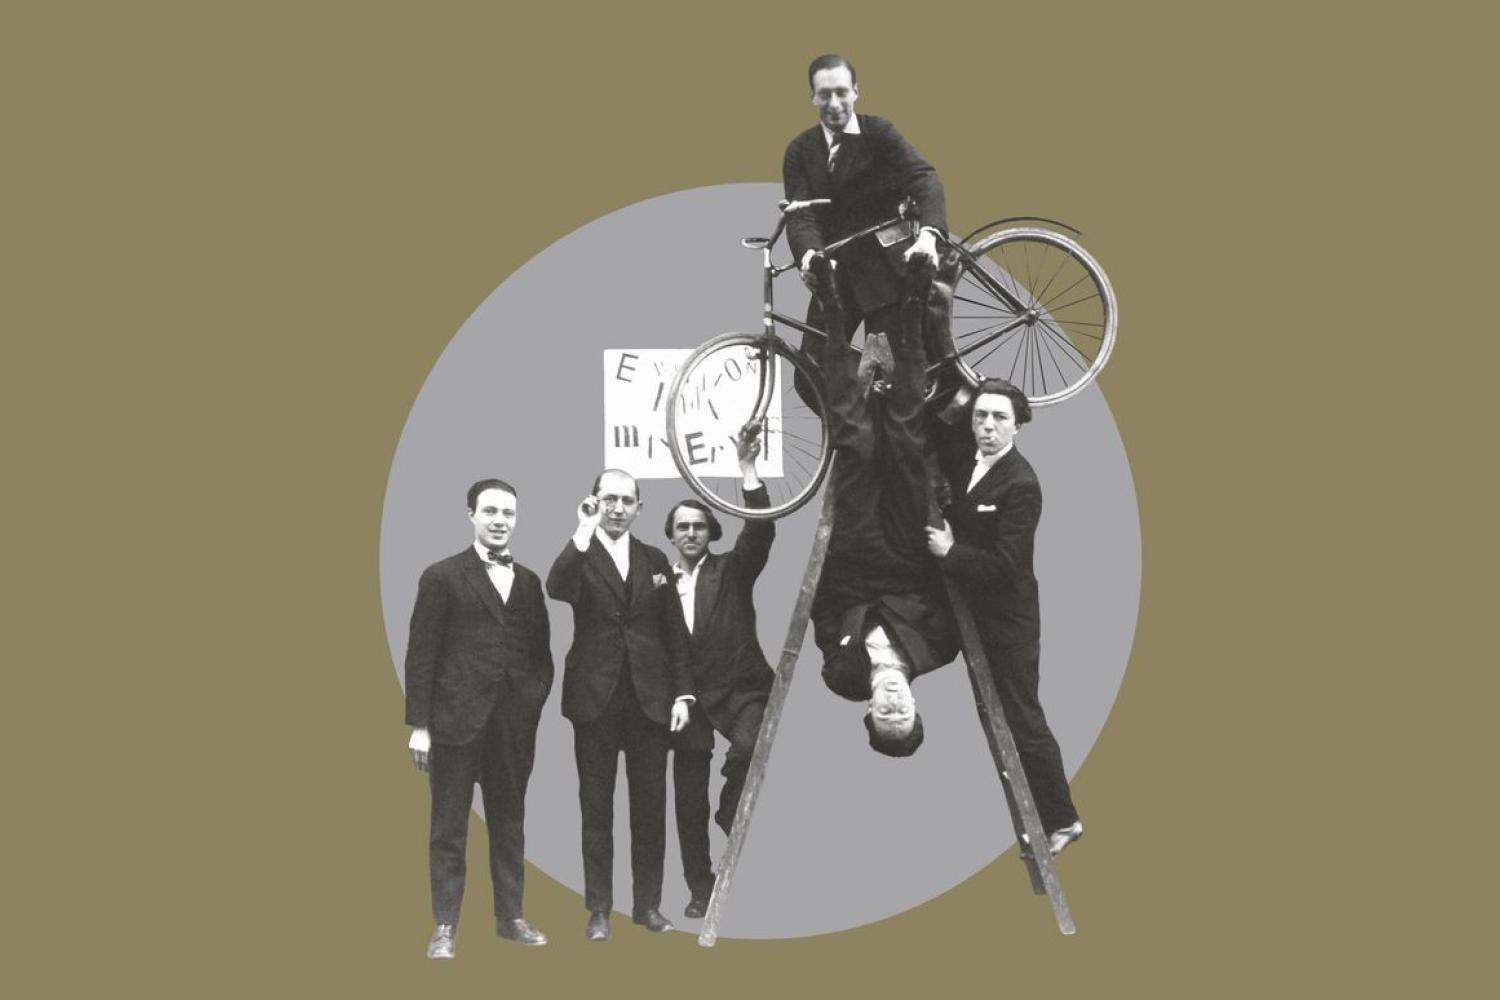  Photographie du groupe surréaliste lors du vernissage de l'exposition « Dada Max Ernst », le 2 mai 1921 -  - Auteur inconnu © Chancellerie des Universités de Paris - BLJD, Paris / cliché © BnF / Suzanne Nagy